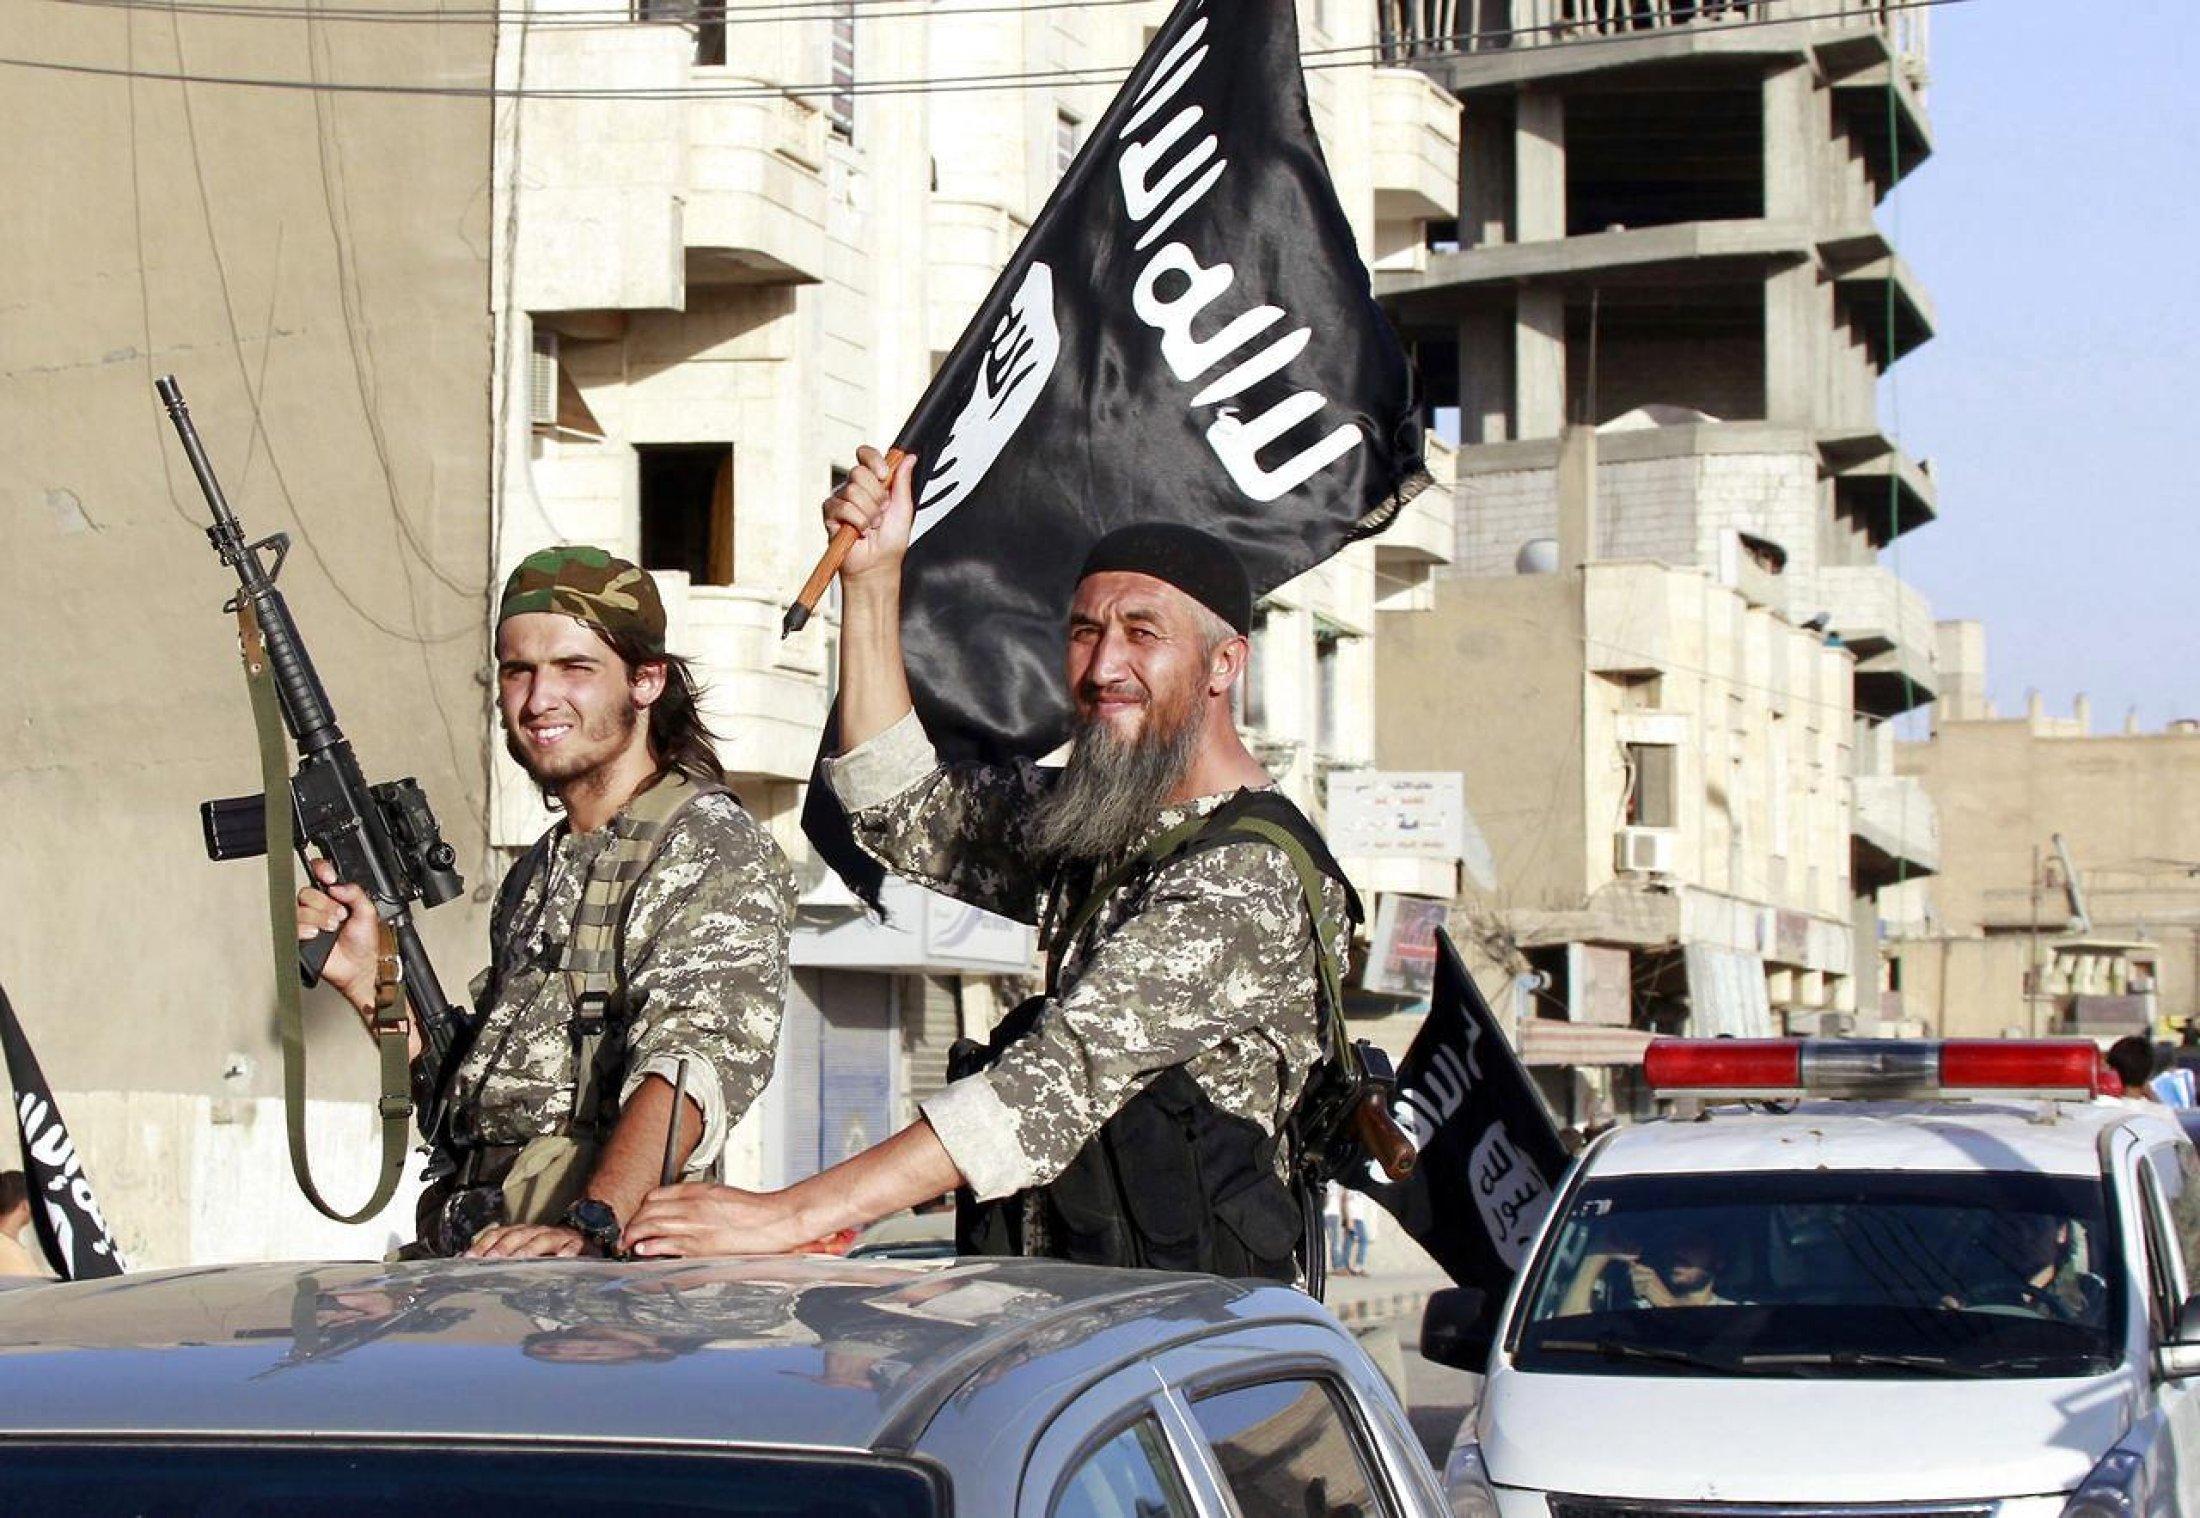 Игил по английски. Исламское государство Ирака и Леванта ИГИЛ. Террористская группа Аль-Каида.